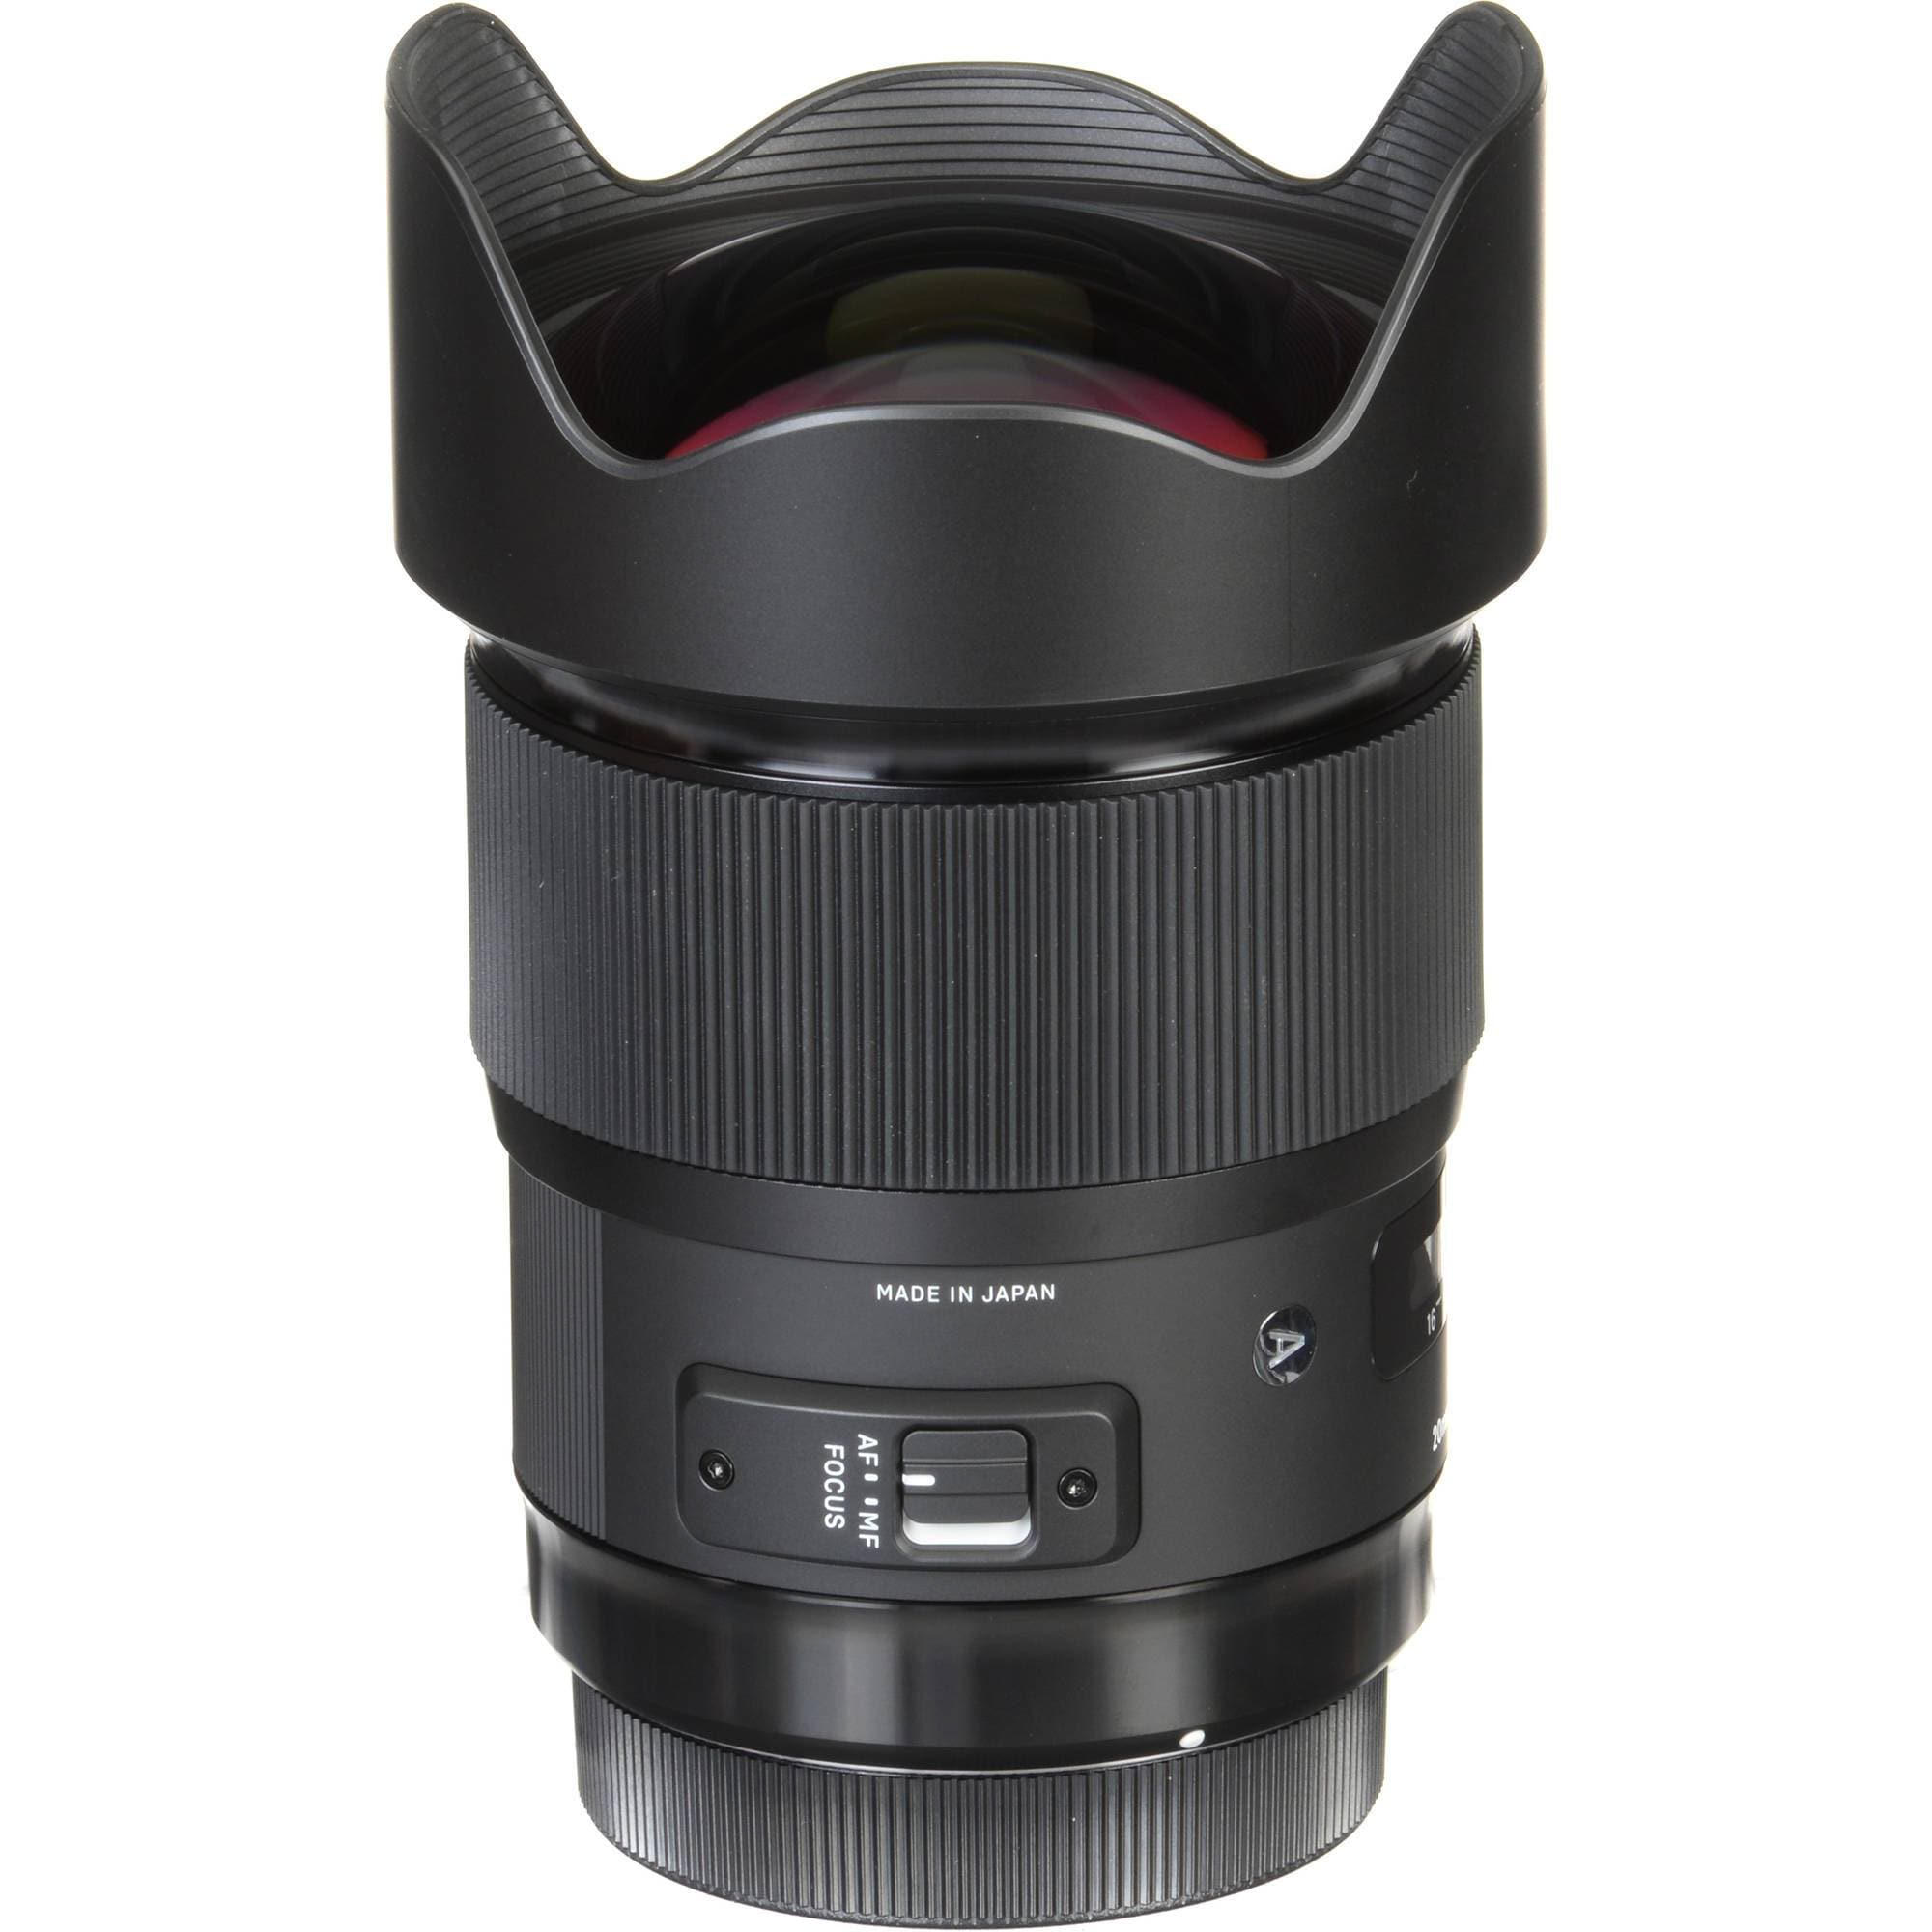 Sigma 20mm F1.4 DG HSM Art Lens For Canon EF mount